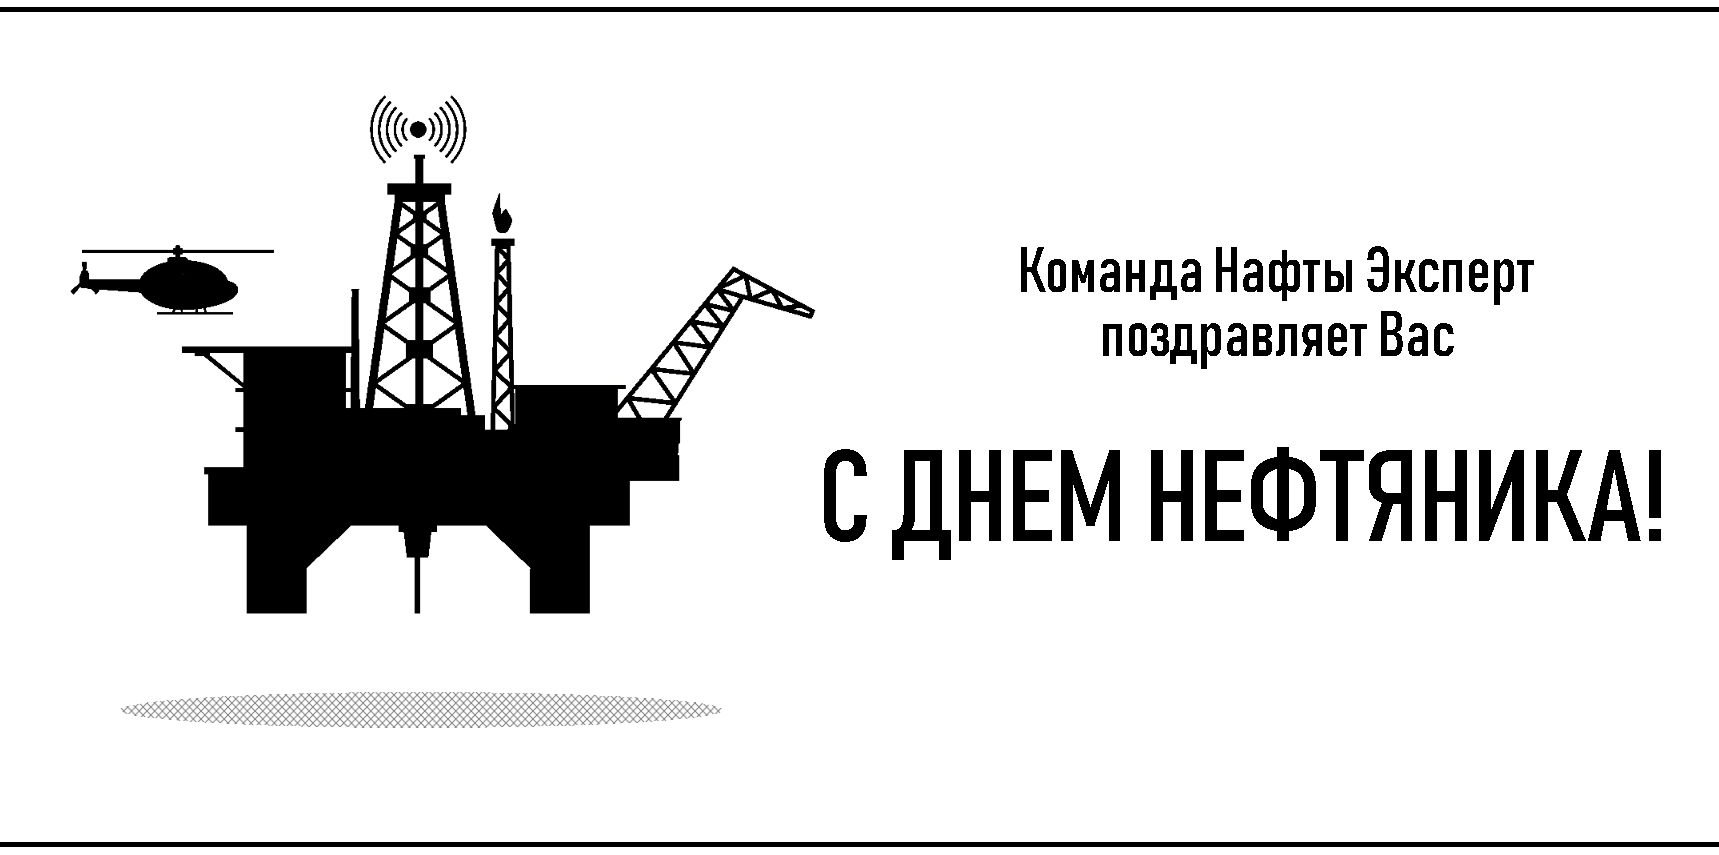 Коллектив ООО "Нафта Эксперт" поздравляет Вас с Днем работника нефтяной и газовой промышленности!